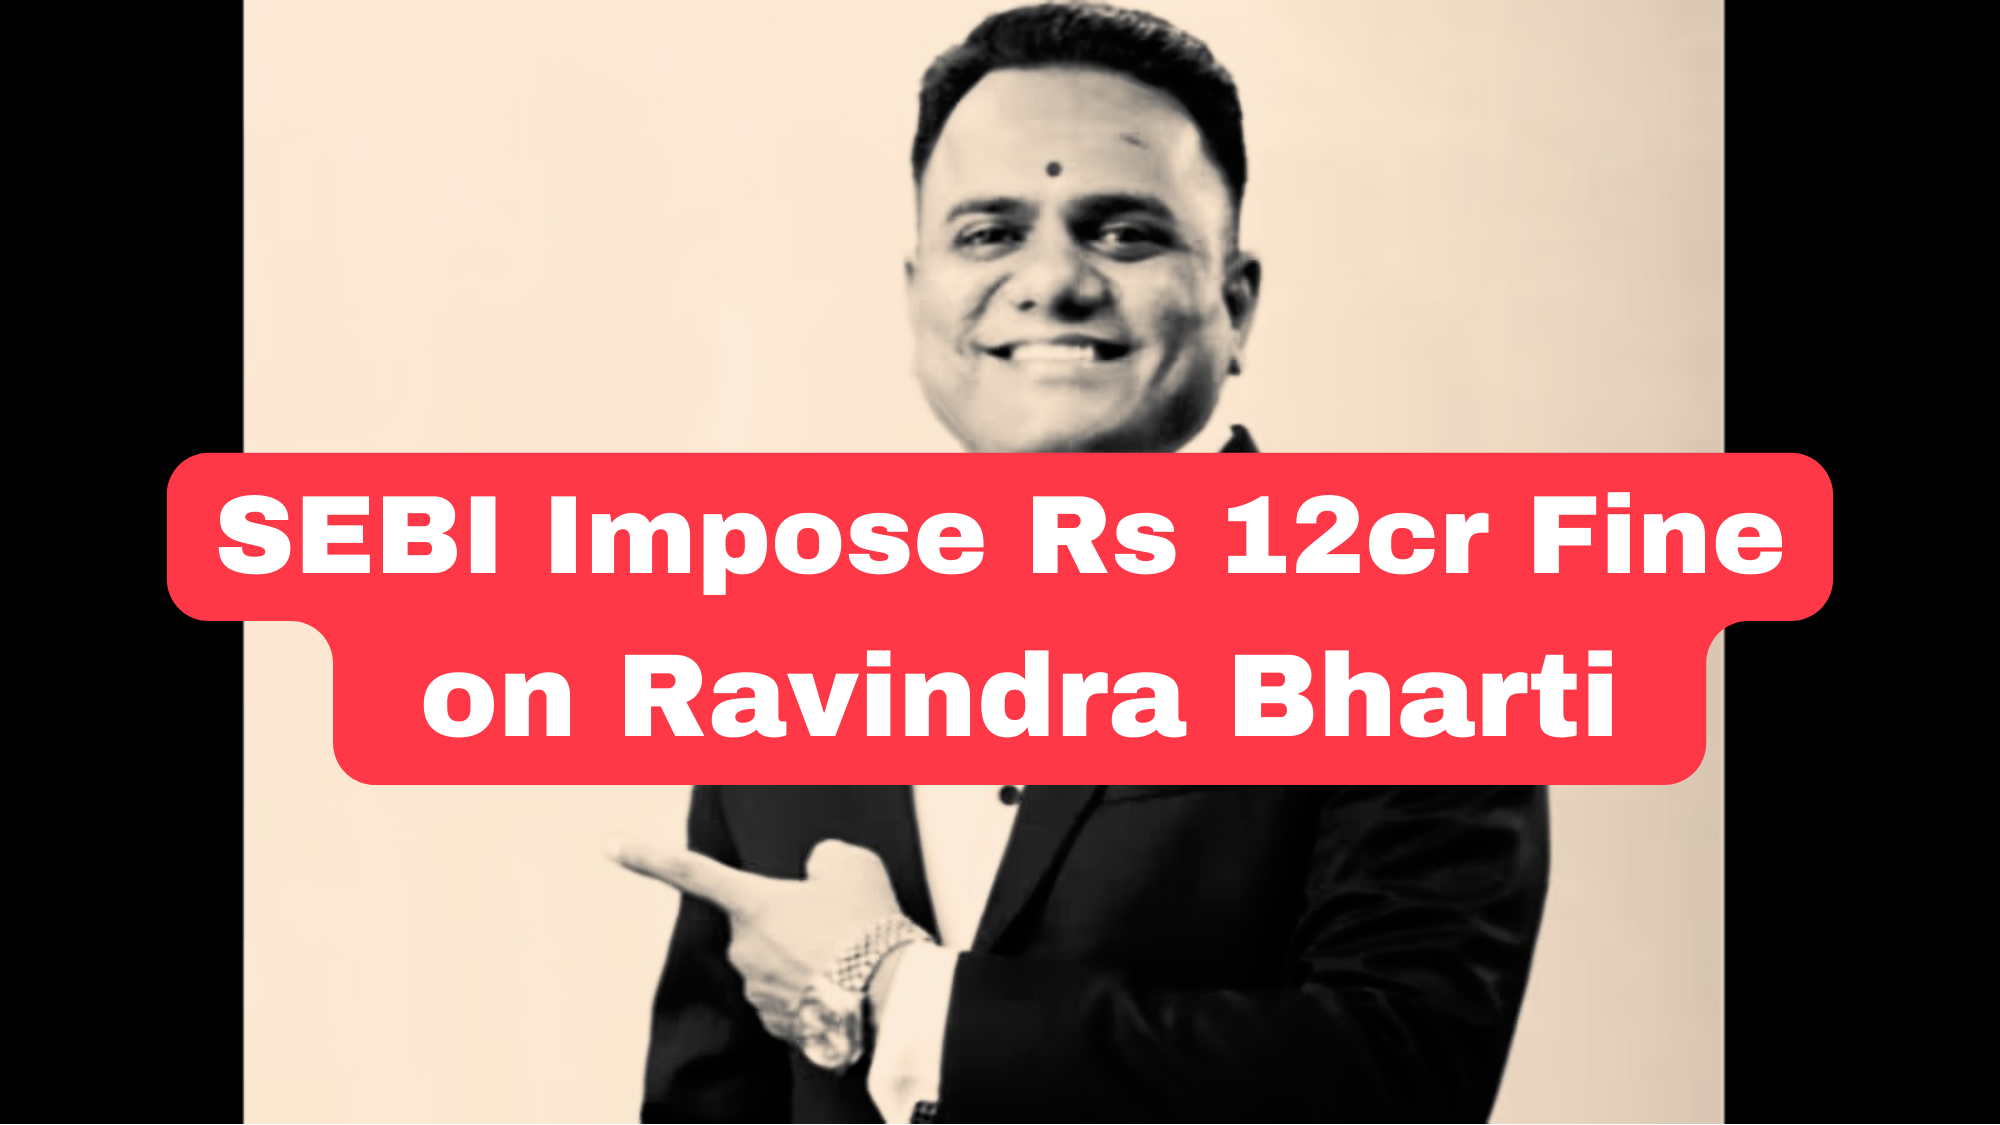 How SEBI Impose Rs 12cr Fine on Ravindra Bharti for Promising 1,000% Return